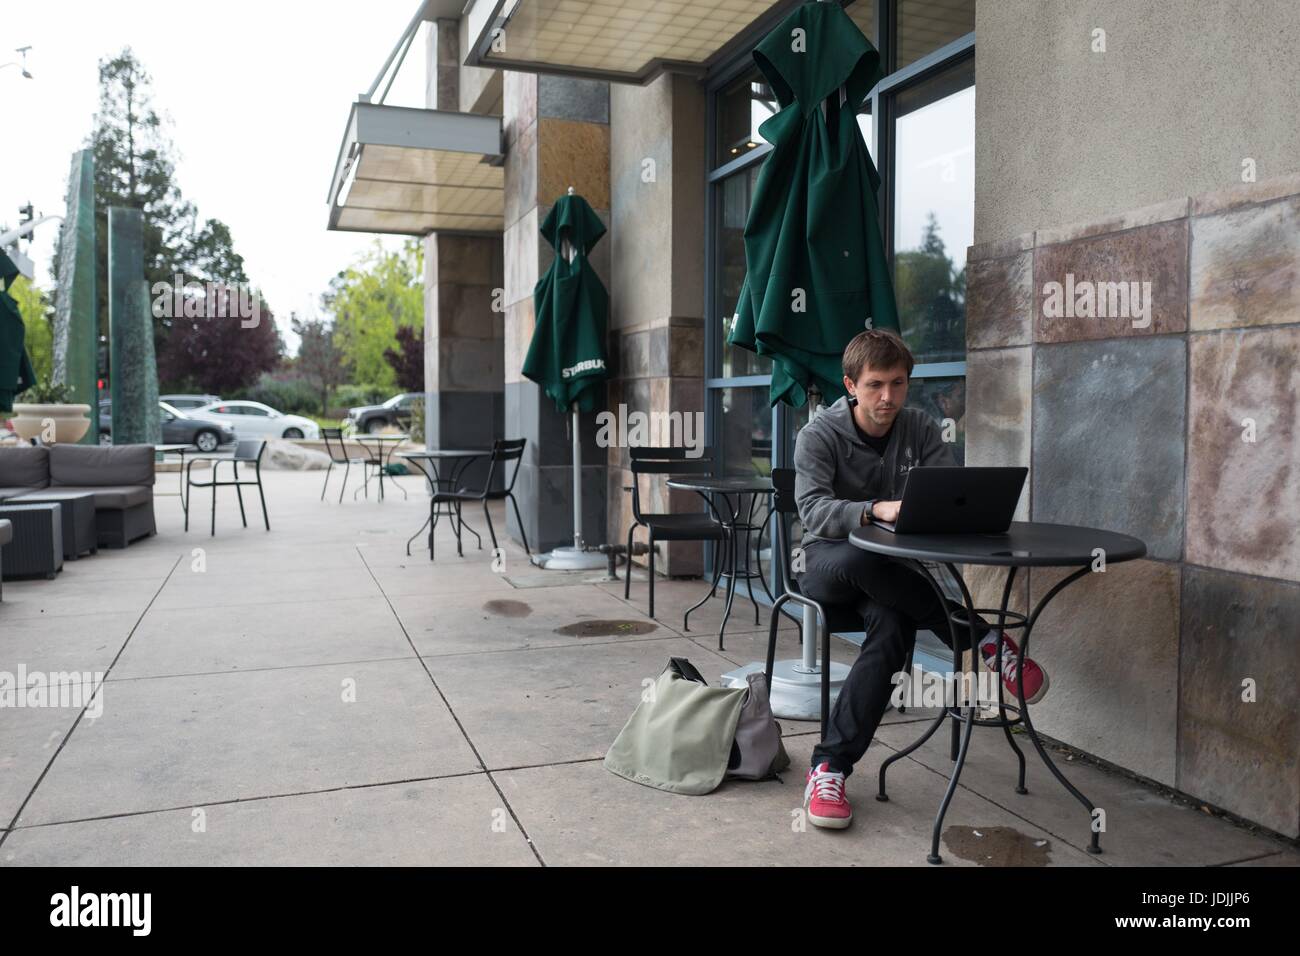 Ein Junge männliche Technologie Arbeiter tragen einen Hoodie sitzt außerhalb in einem Starbucks und arbeitet auf einem Laptop in der Nähe der Googleplex Hauptquartier von Google Inc in das Silicon Valley Stadt Mountain View, Kalifornien, 7. April 2017. Stockfoto